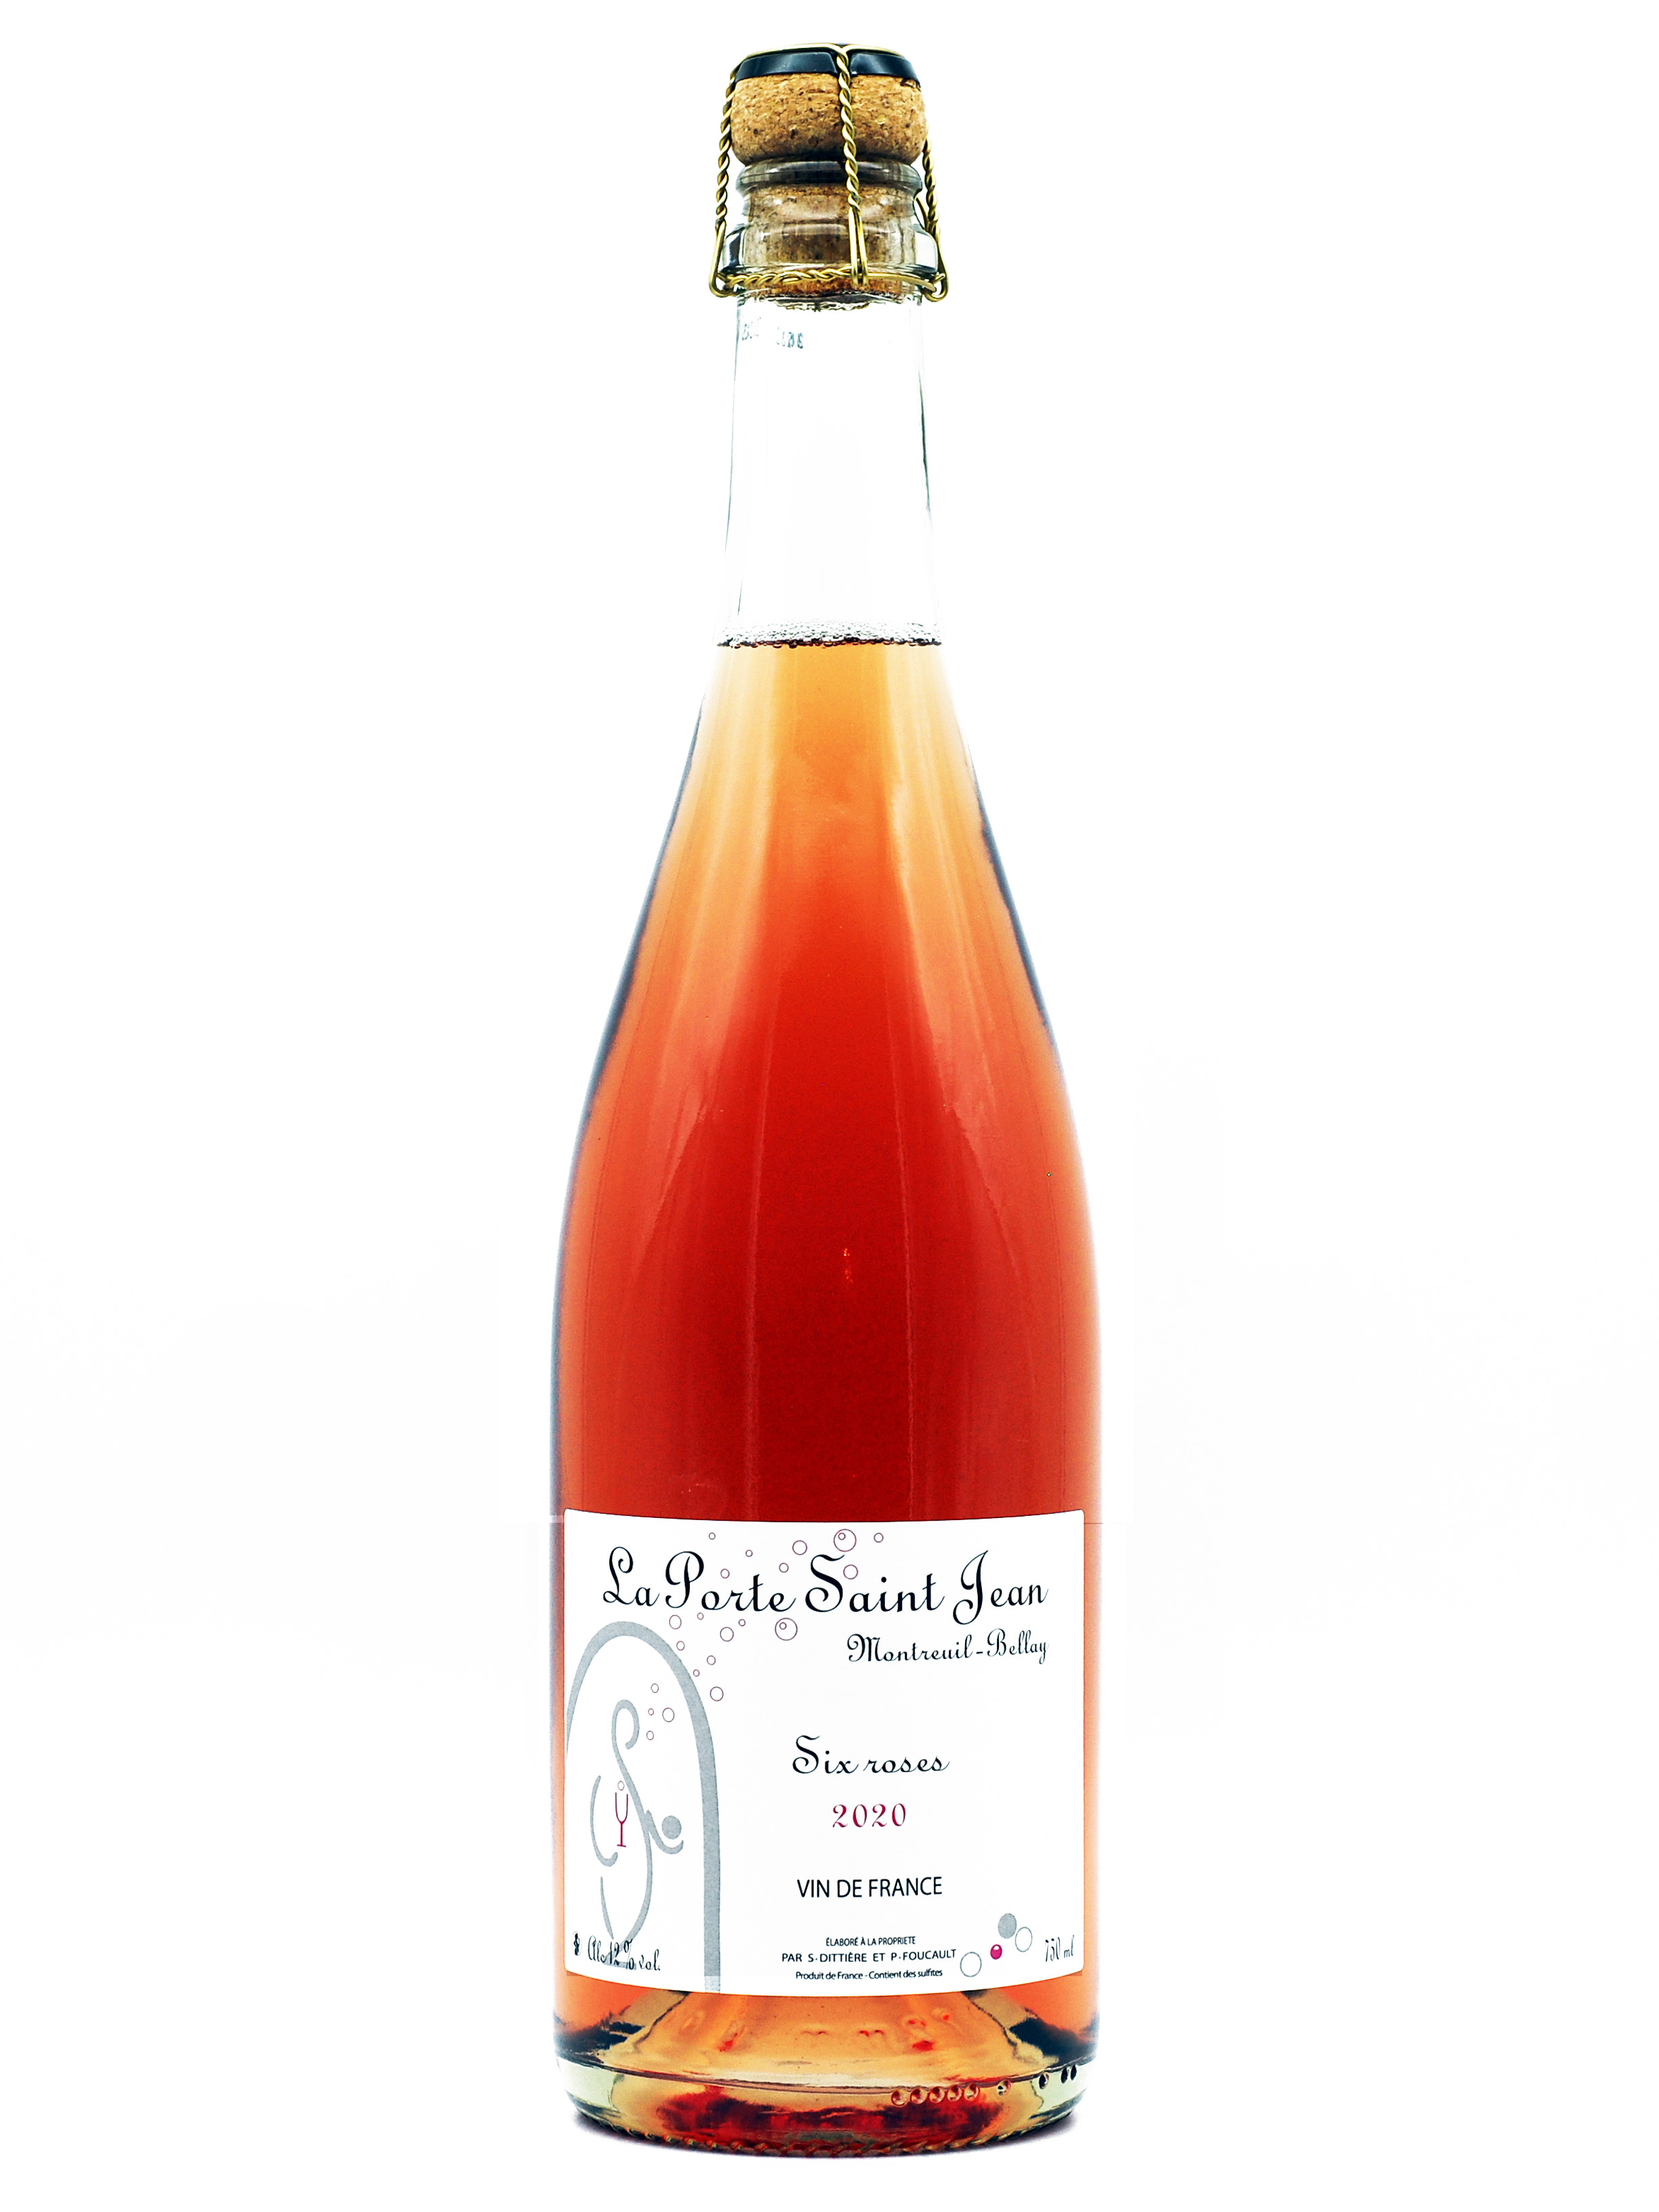 Vin rosé LES PIEDS DANS LE SABLE bouteille 75cl - Foie Gras Luxe